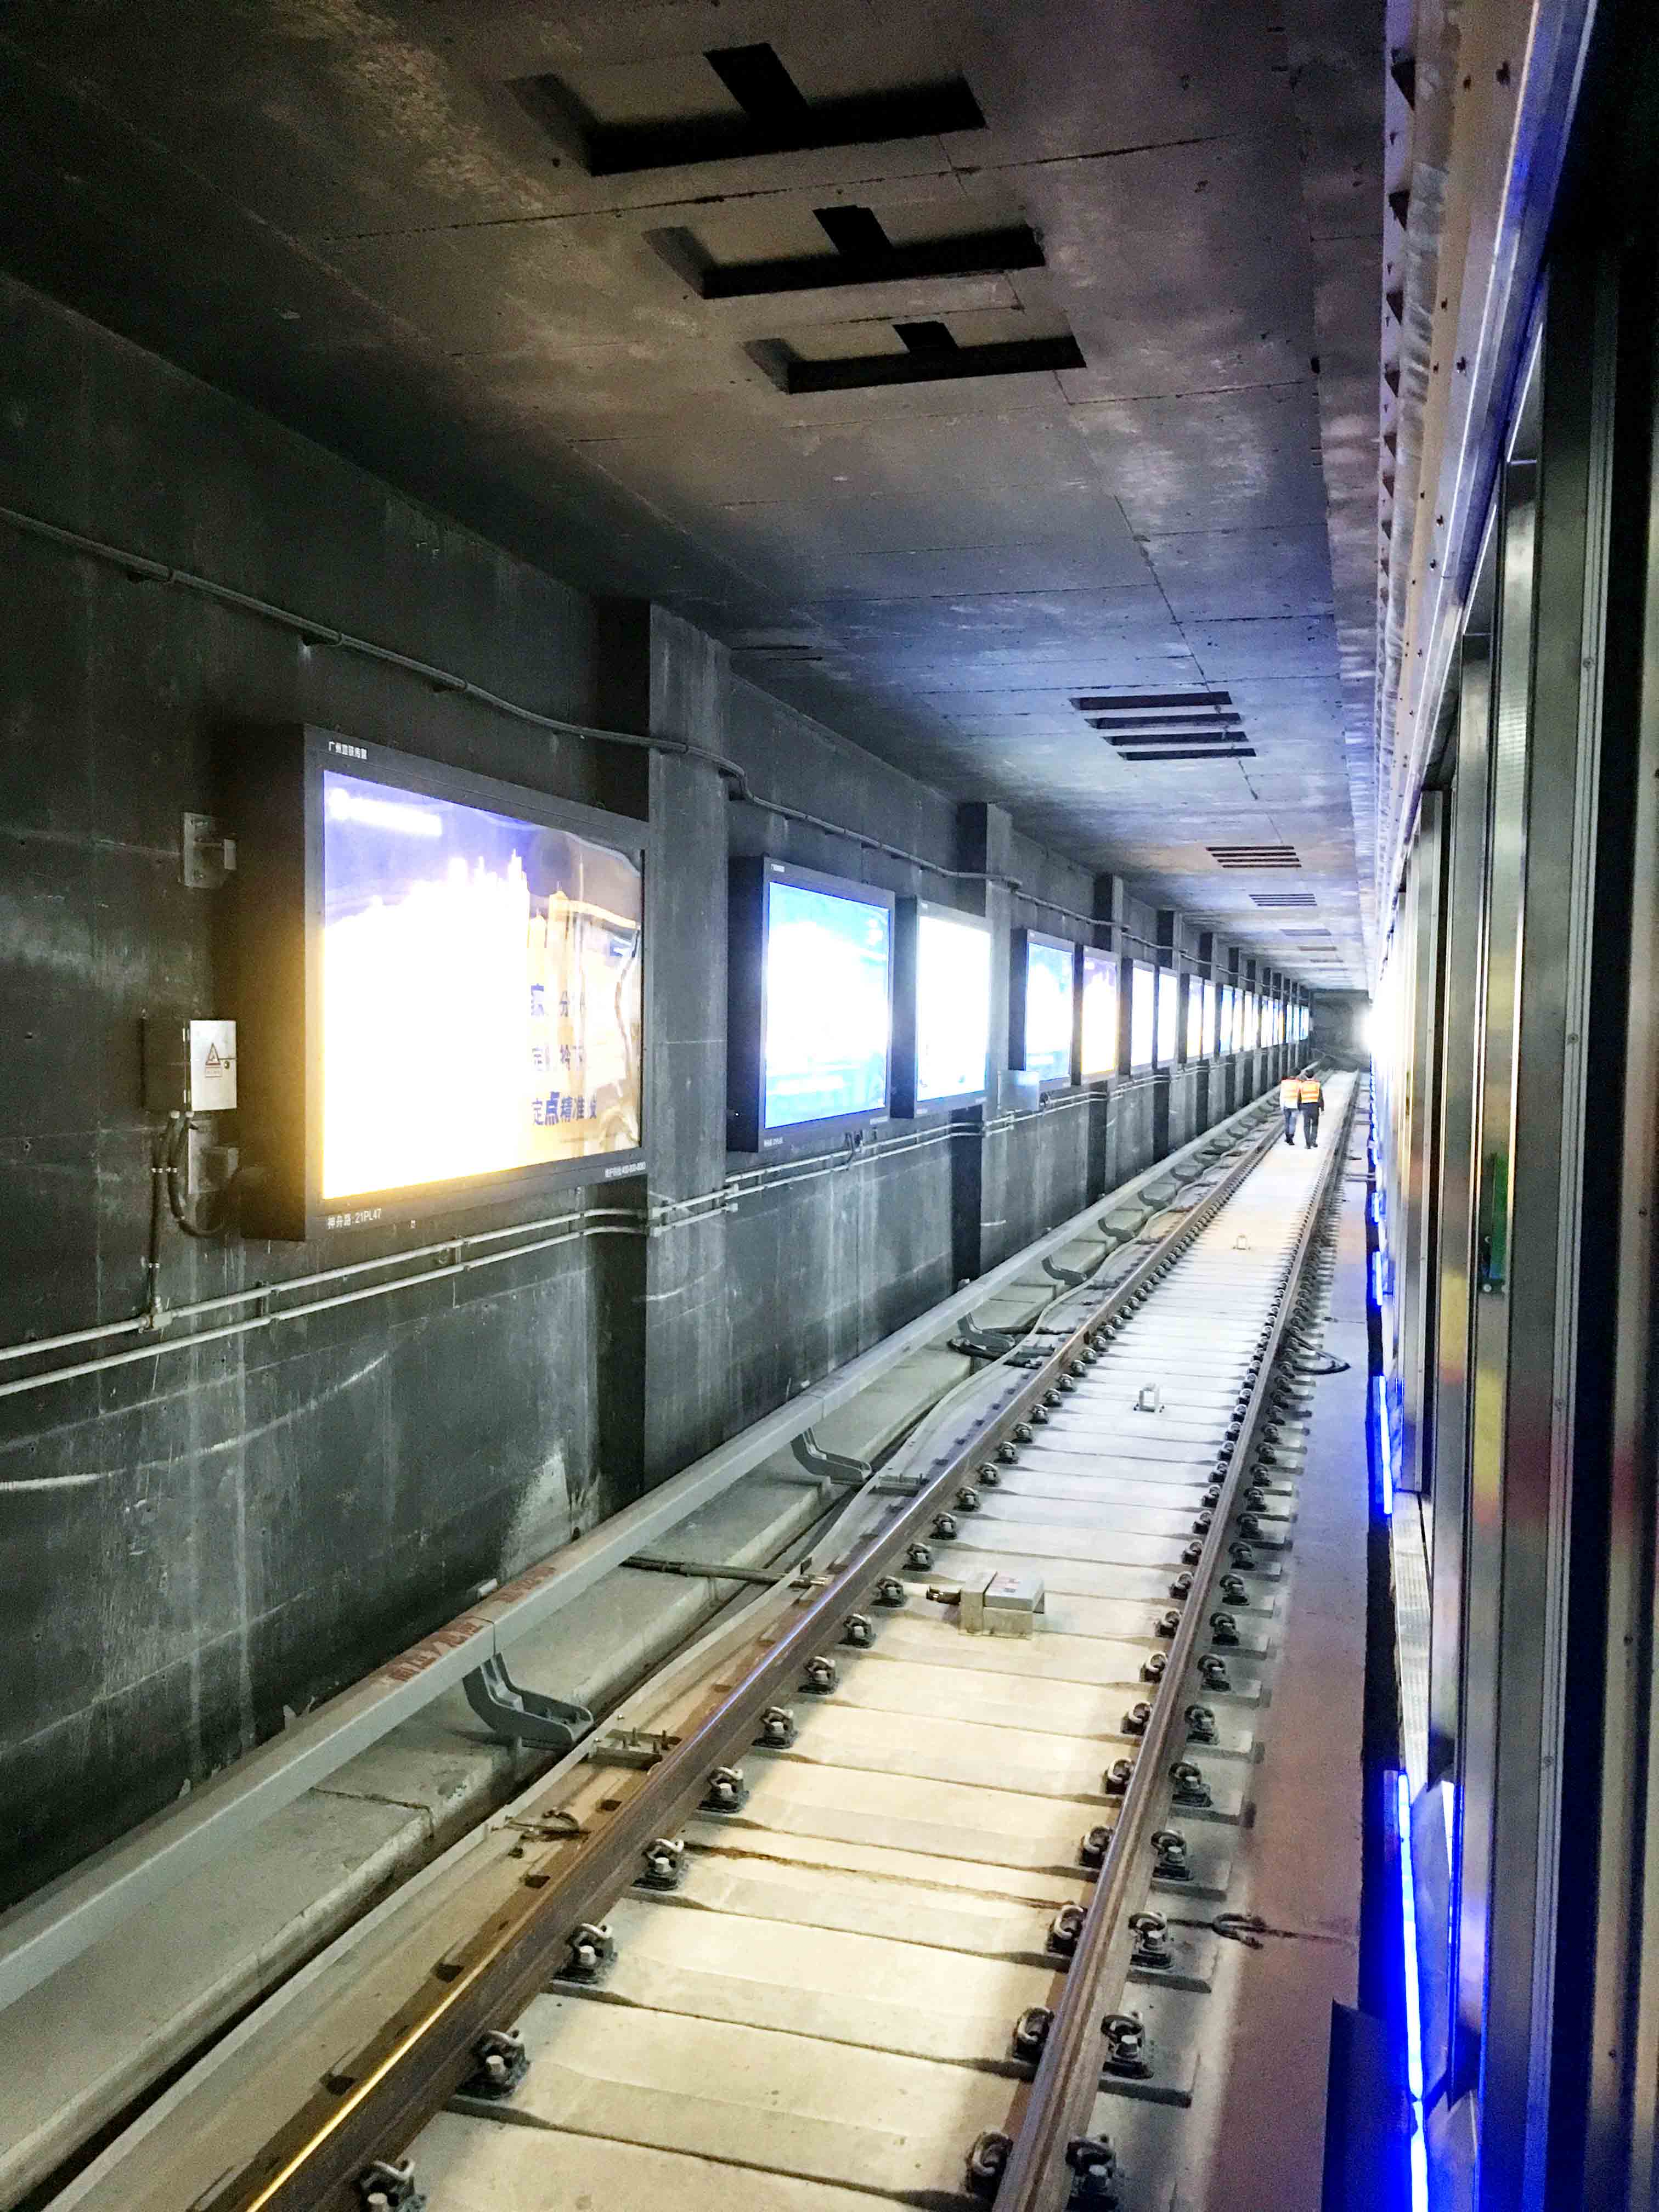 广州地铁21号线